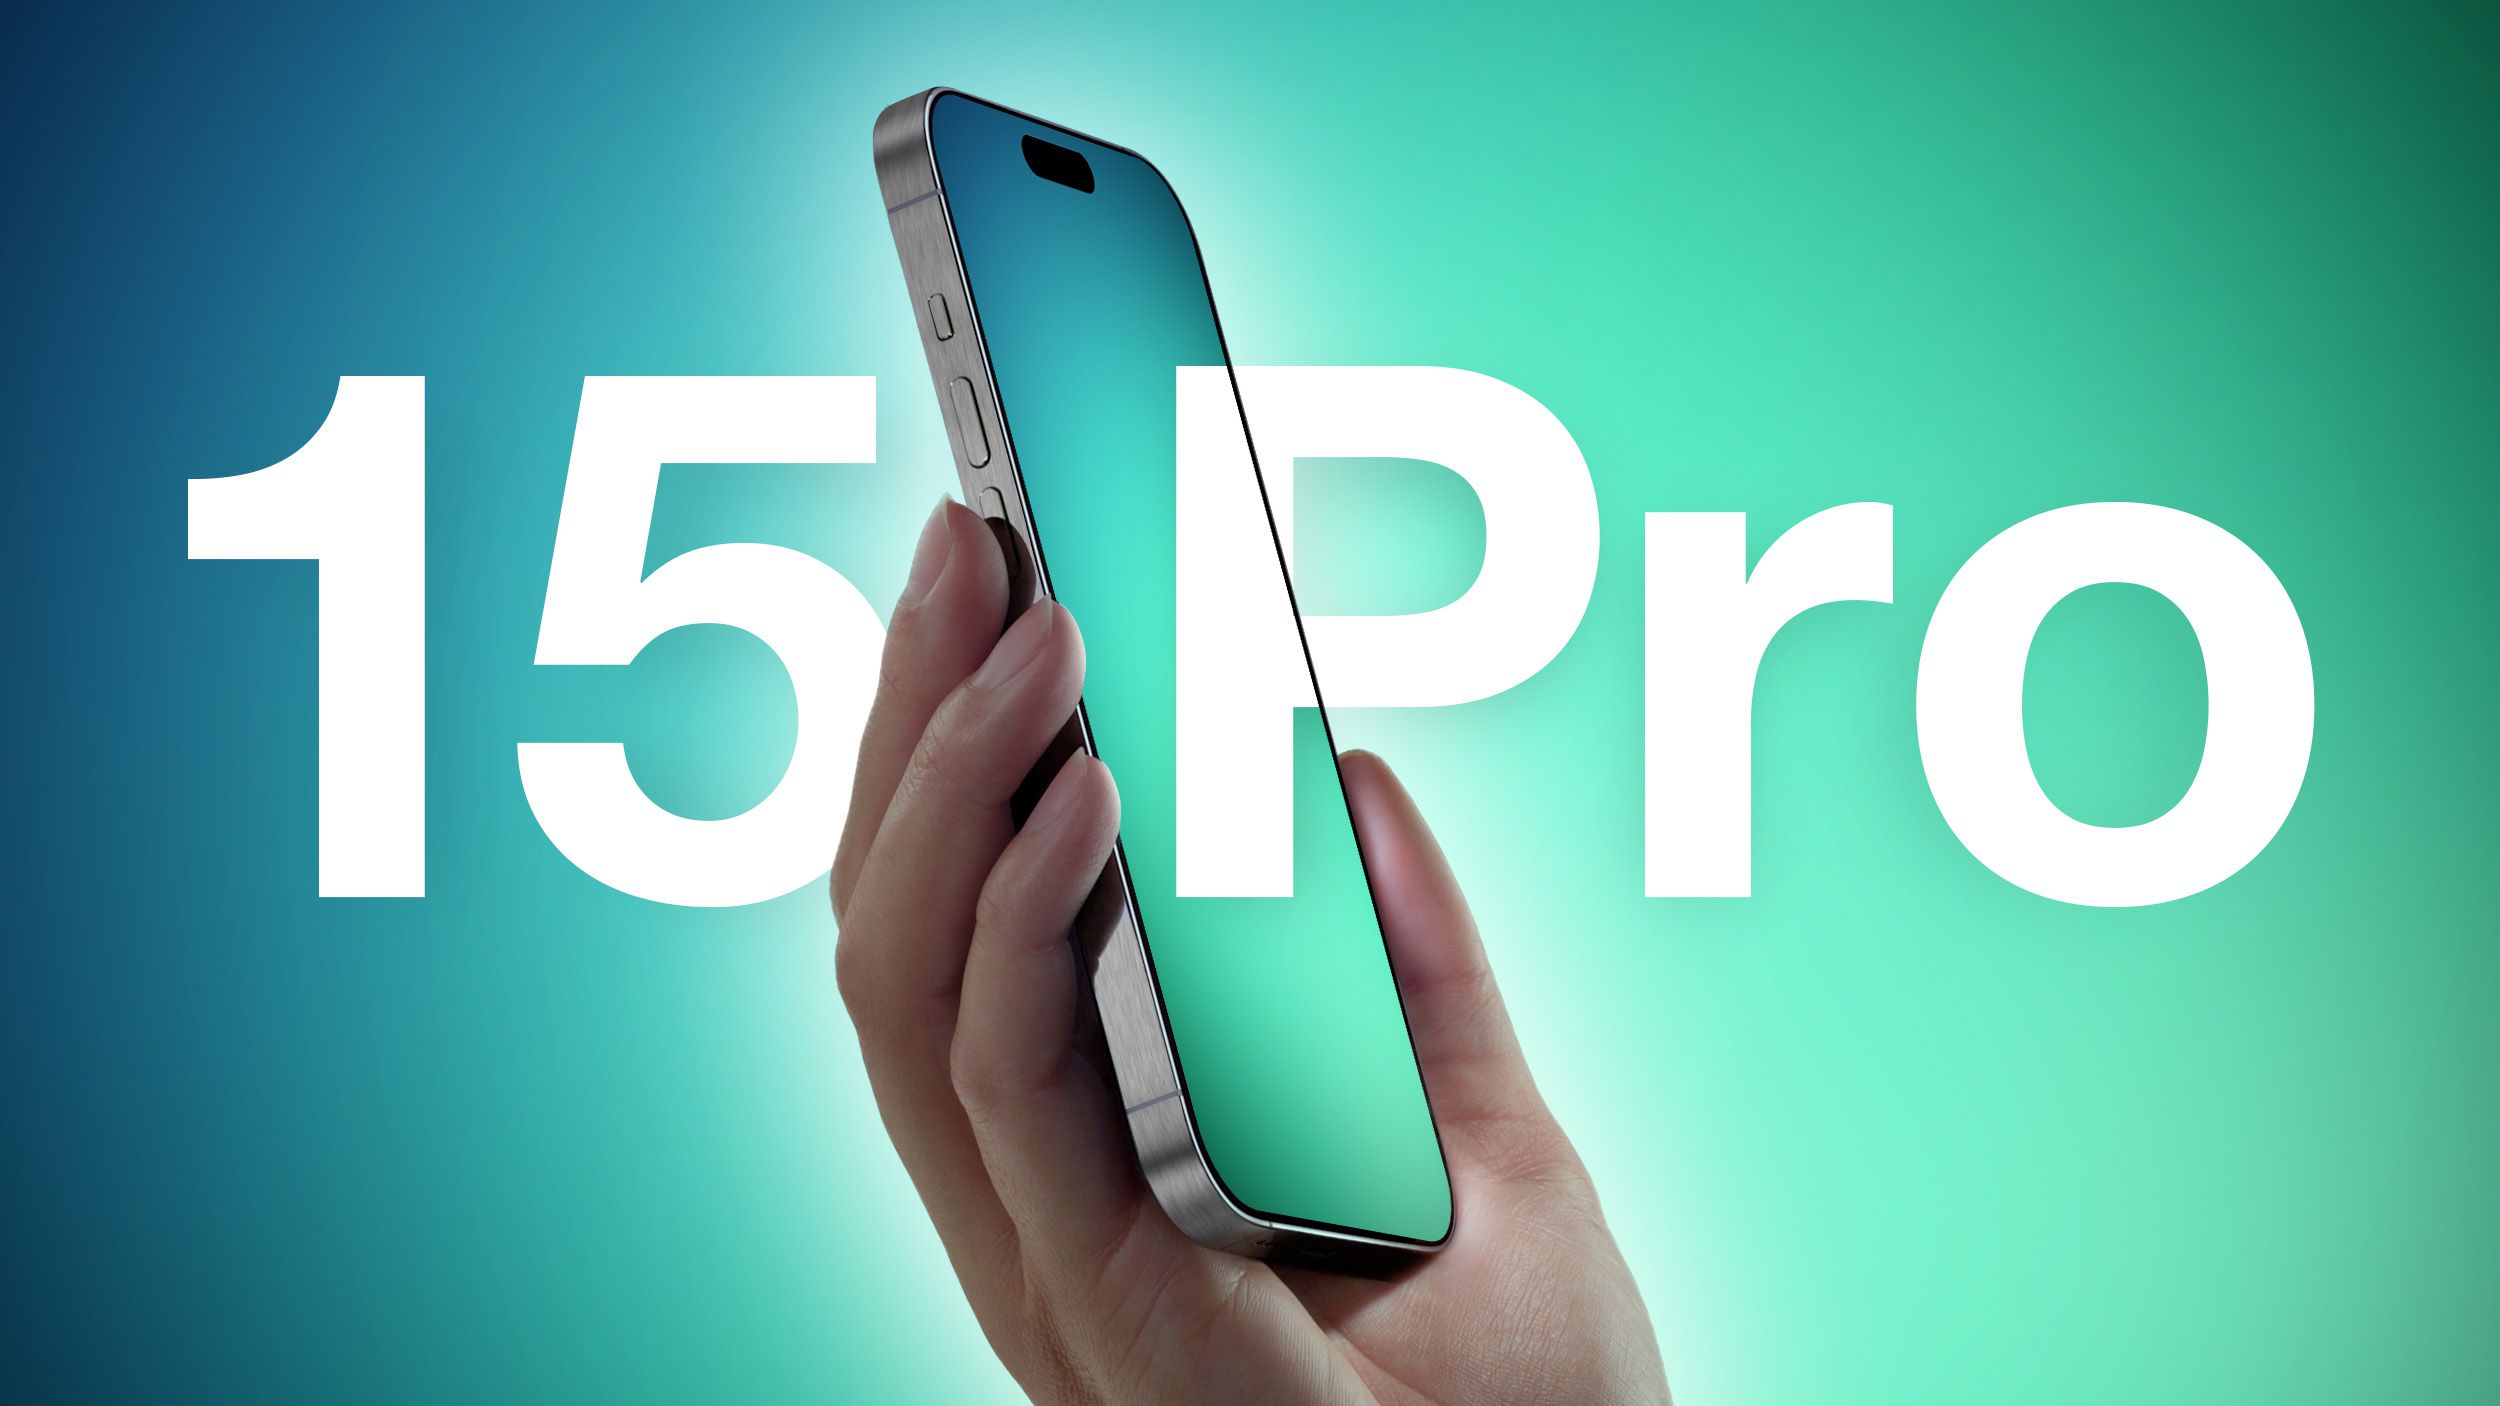 Los suministros del iPhone 15 Pro y Pro Max podrían verse limitados en el lanzamiento debido a problemas de fabricación de la pantalla